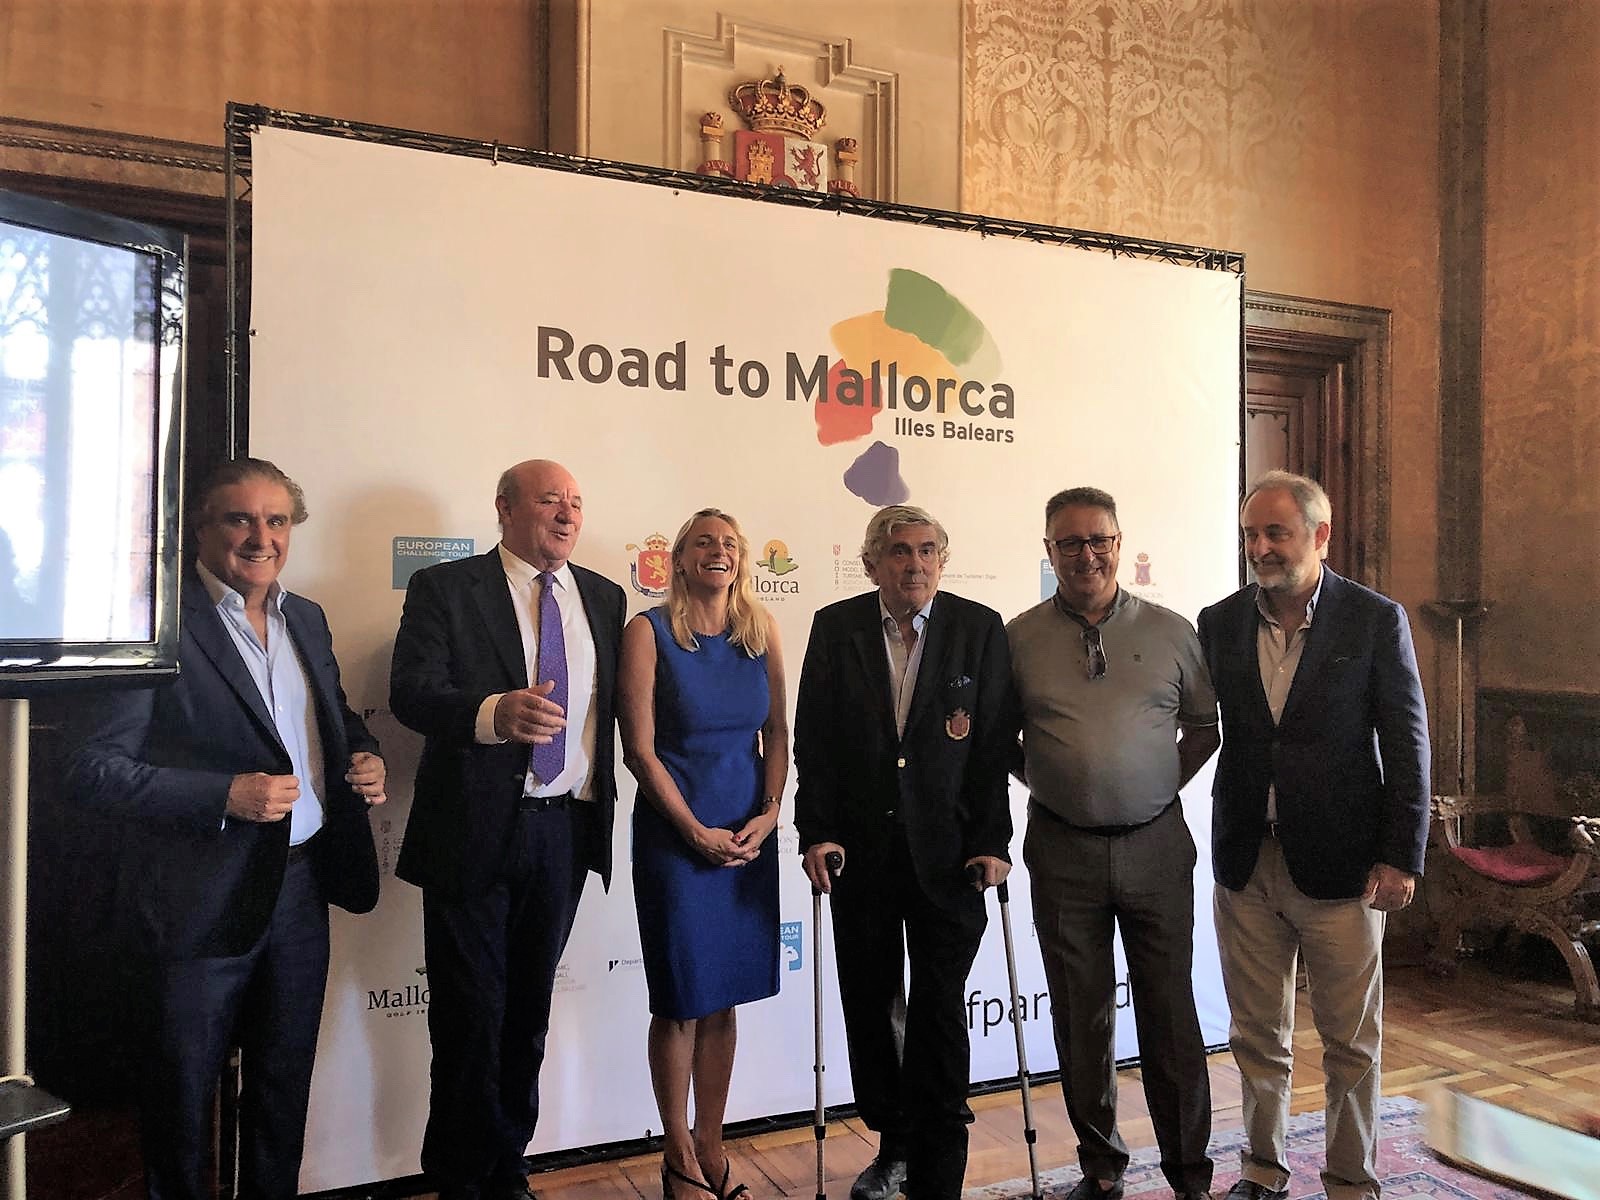 La FEHM asiste a la presentación de la gran final del Challenge Tour de golf, que se celebrará en Mallorca los próximos 4 años